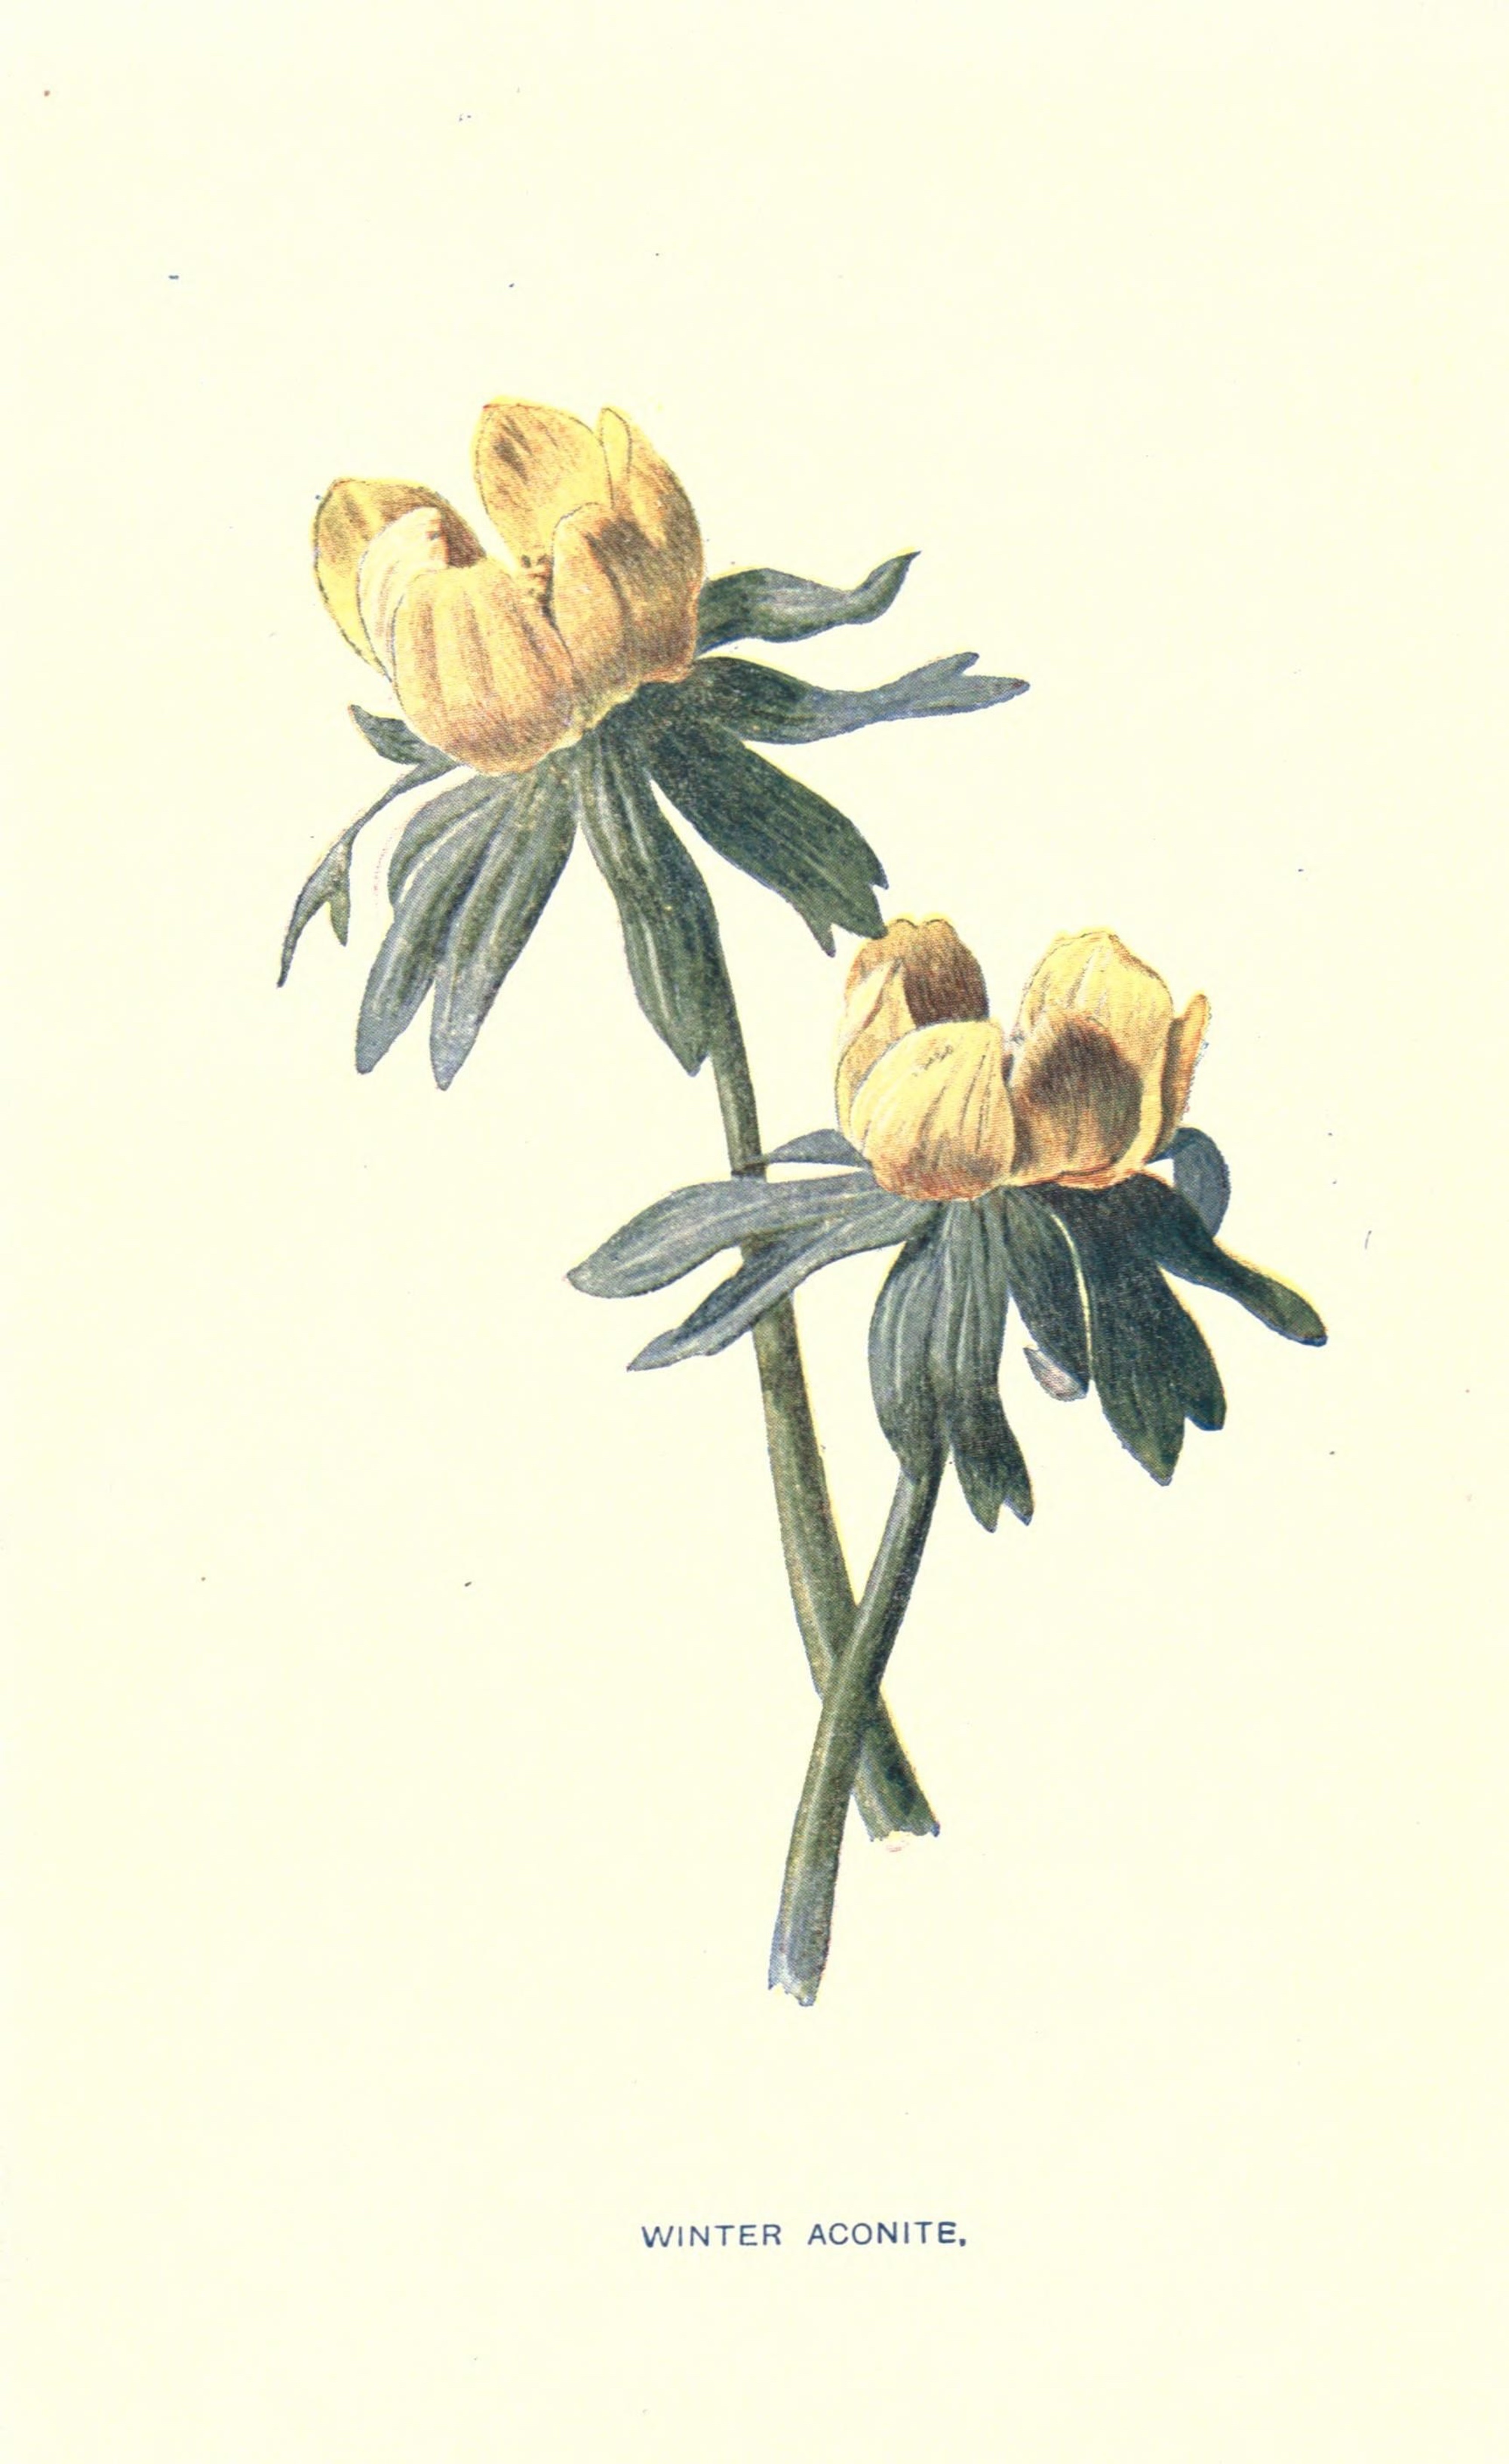 Winter Aconite 1907 botanical illustration.